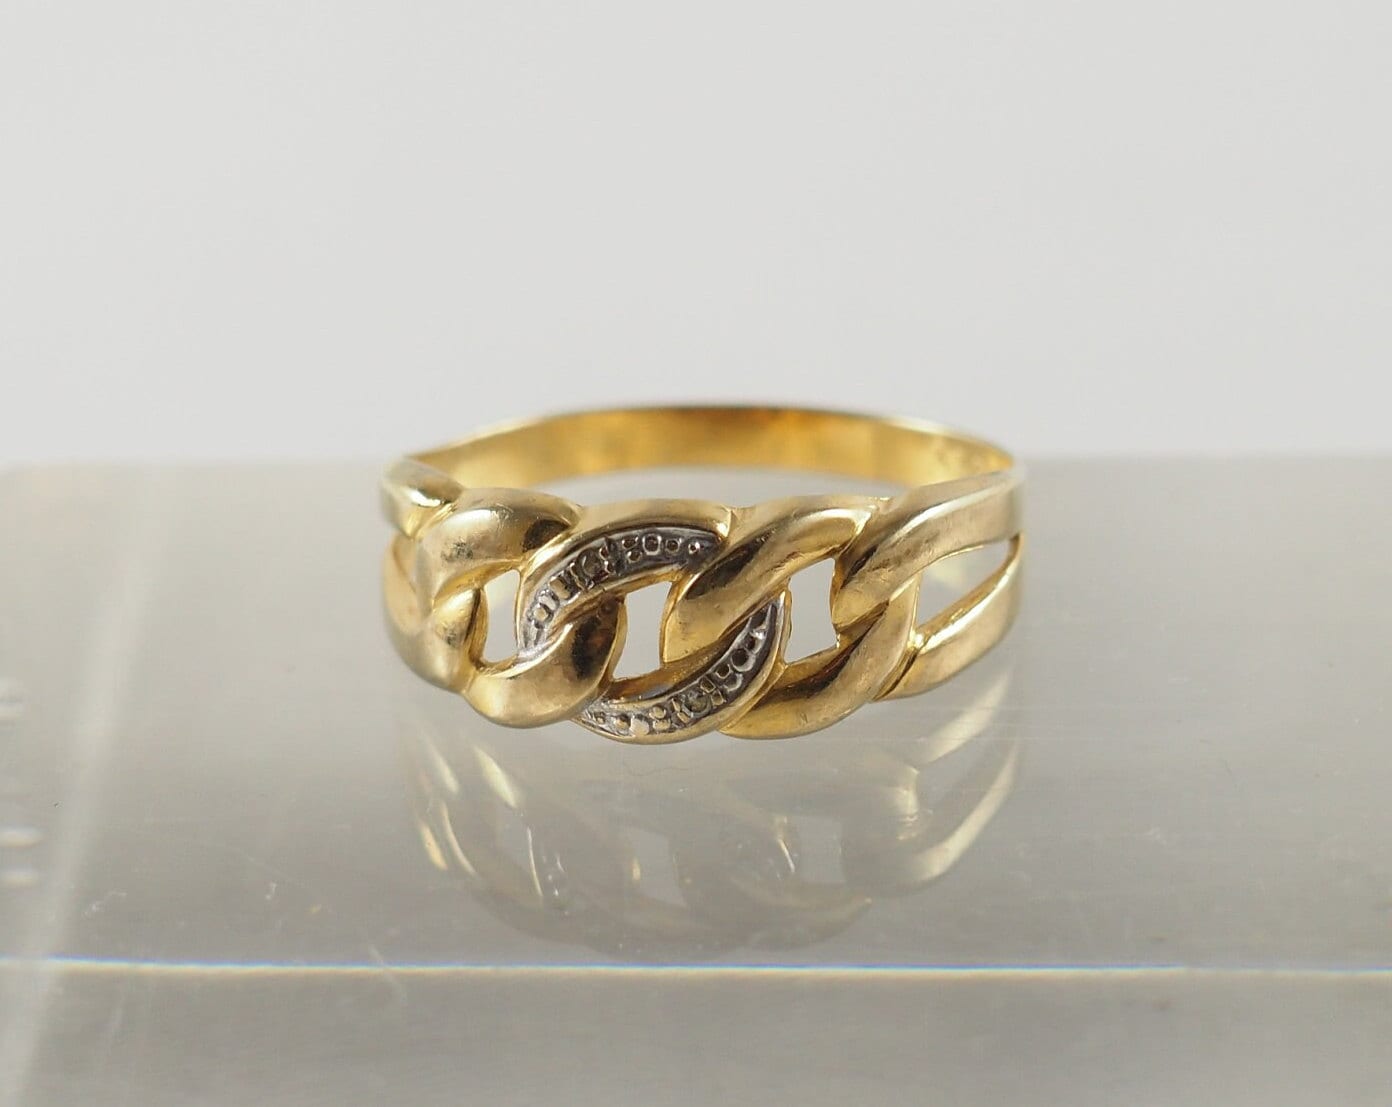 Vintage 8K Gold Und Diamant Keeper Ring, Open Rope Twist, Zwei Winzige Diamanten 0, 01 Karat, Ringgröße Usa 9, Uk S, Deutschland 60, 1950-60 von HanseaticJewels